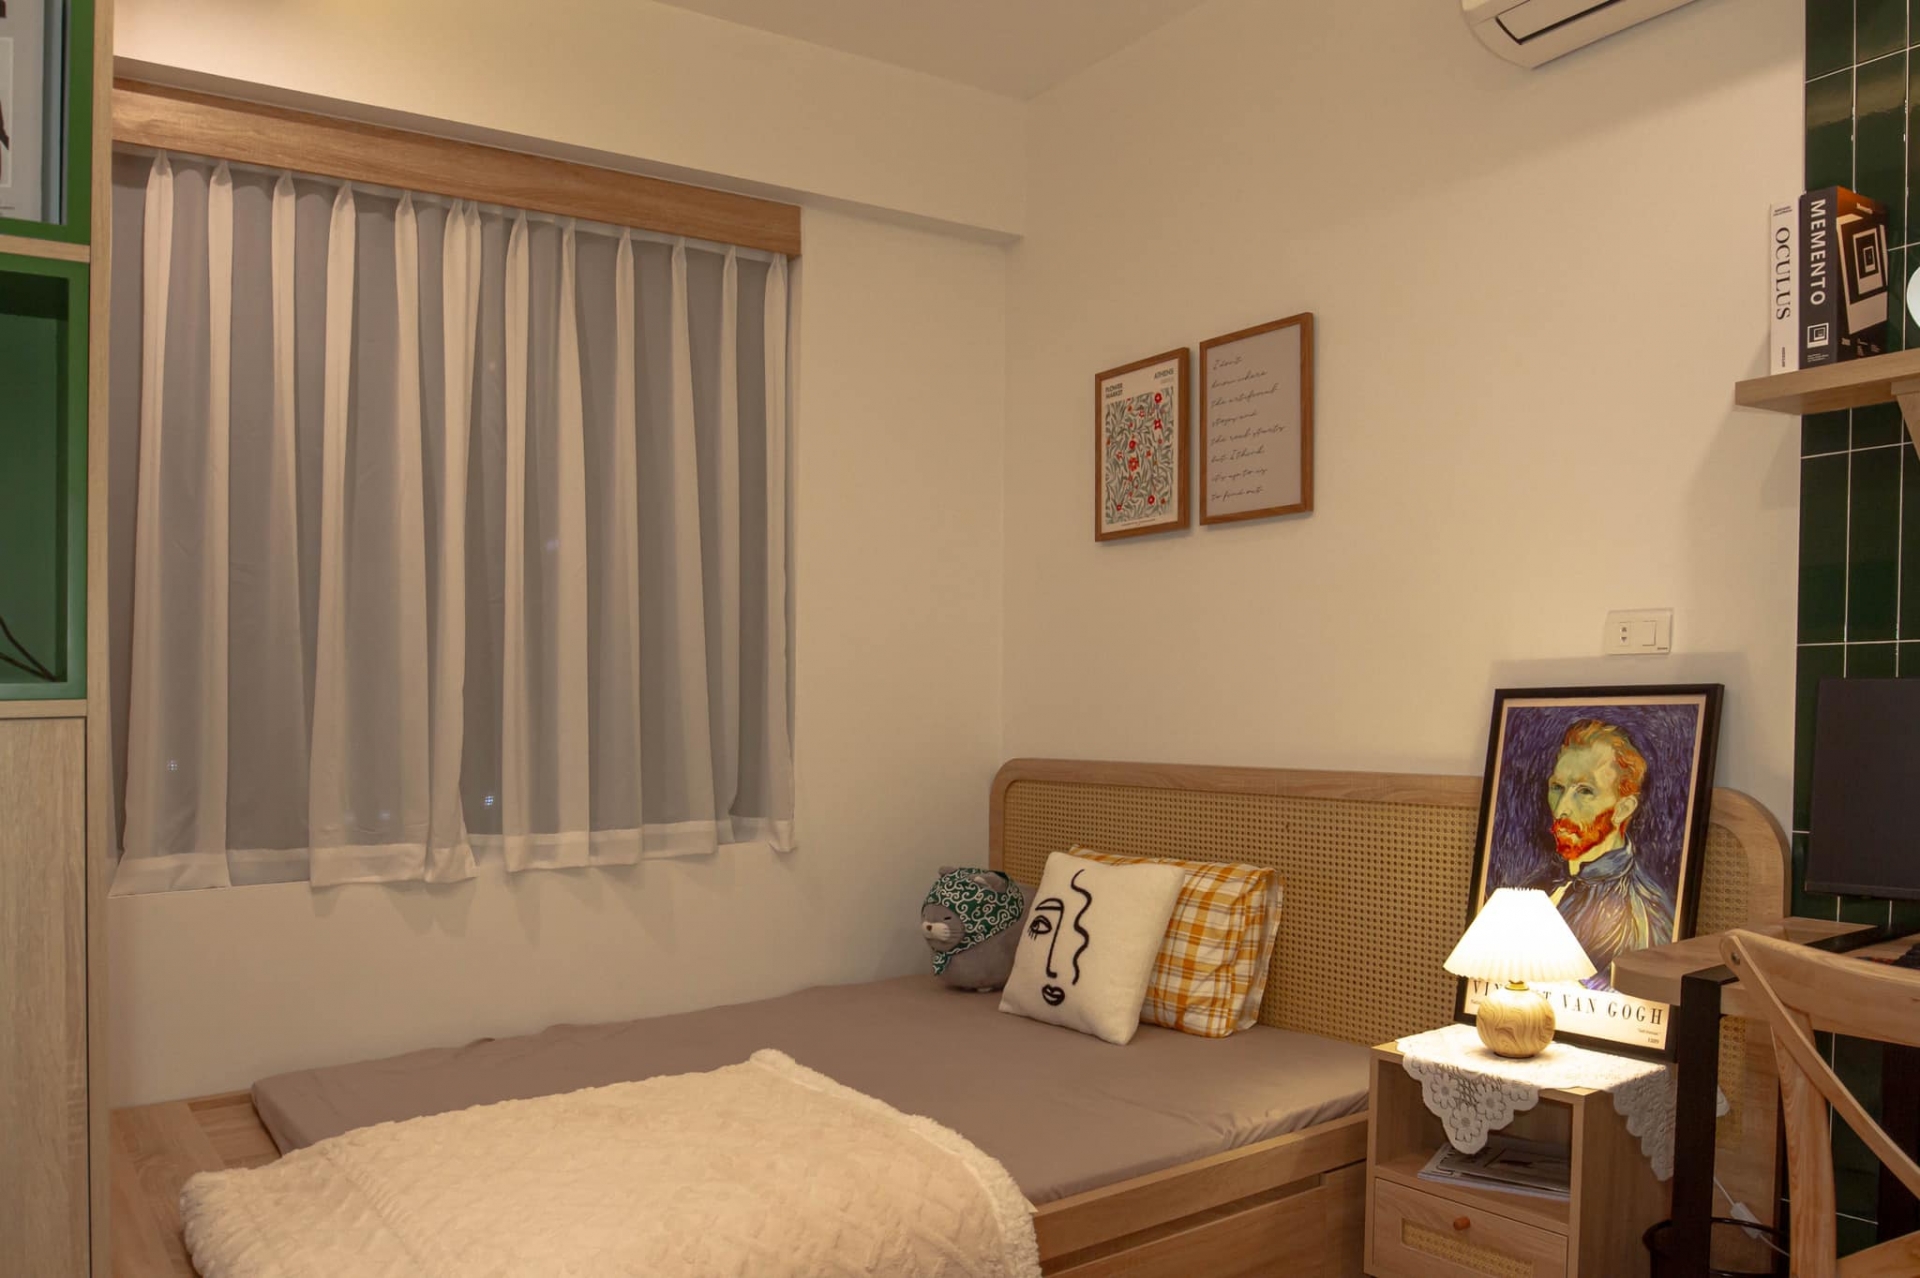 Phòng ngủ thứ hai lựa chọn điểm nhấn bằng gam màu xanh rêu đậm. Nội thất vẫn ưu tiên sự gọn gàng, tiện nghi, từ giường ngủ cho đến táp đầu giường nhỏ nhắn.